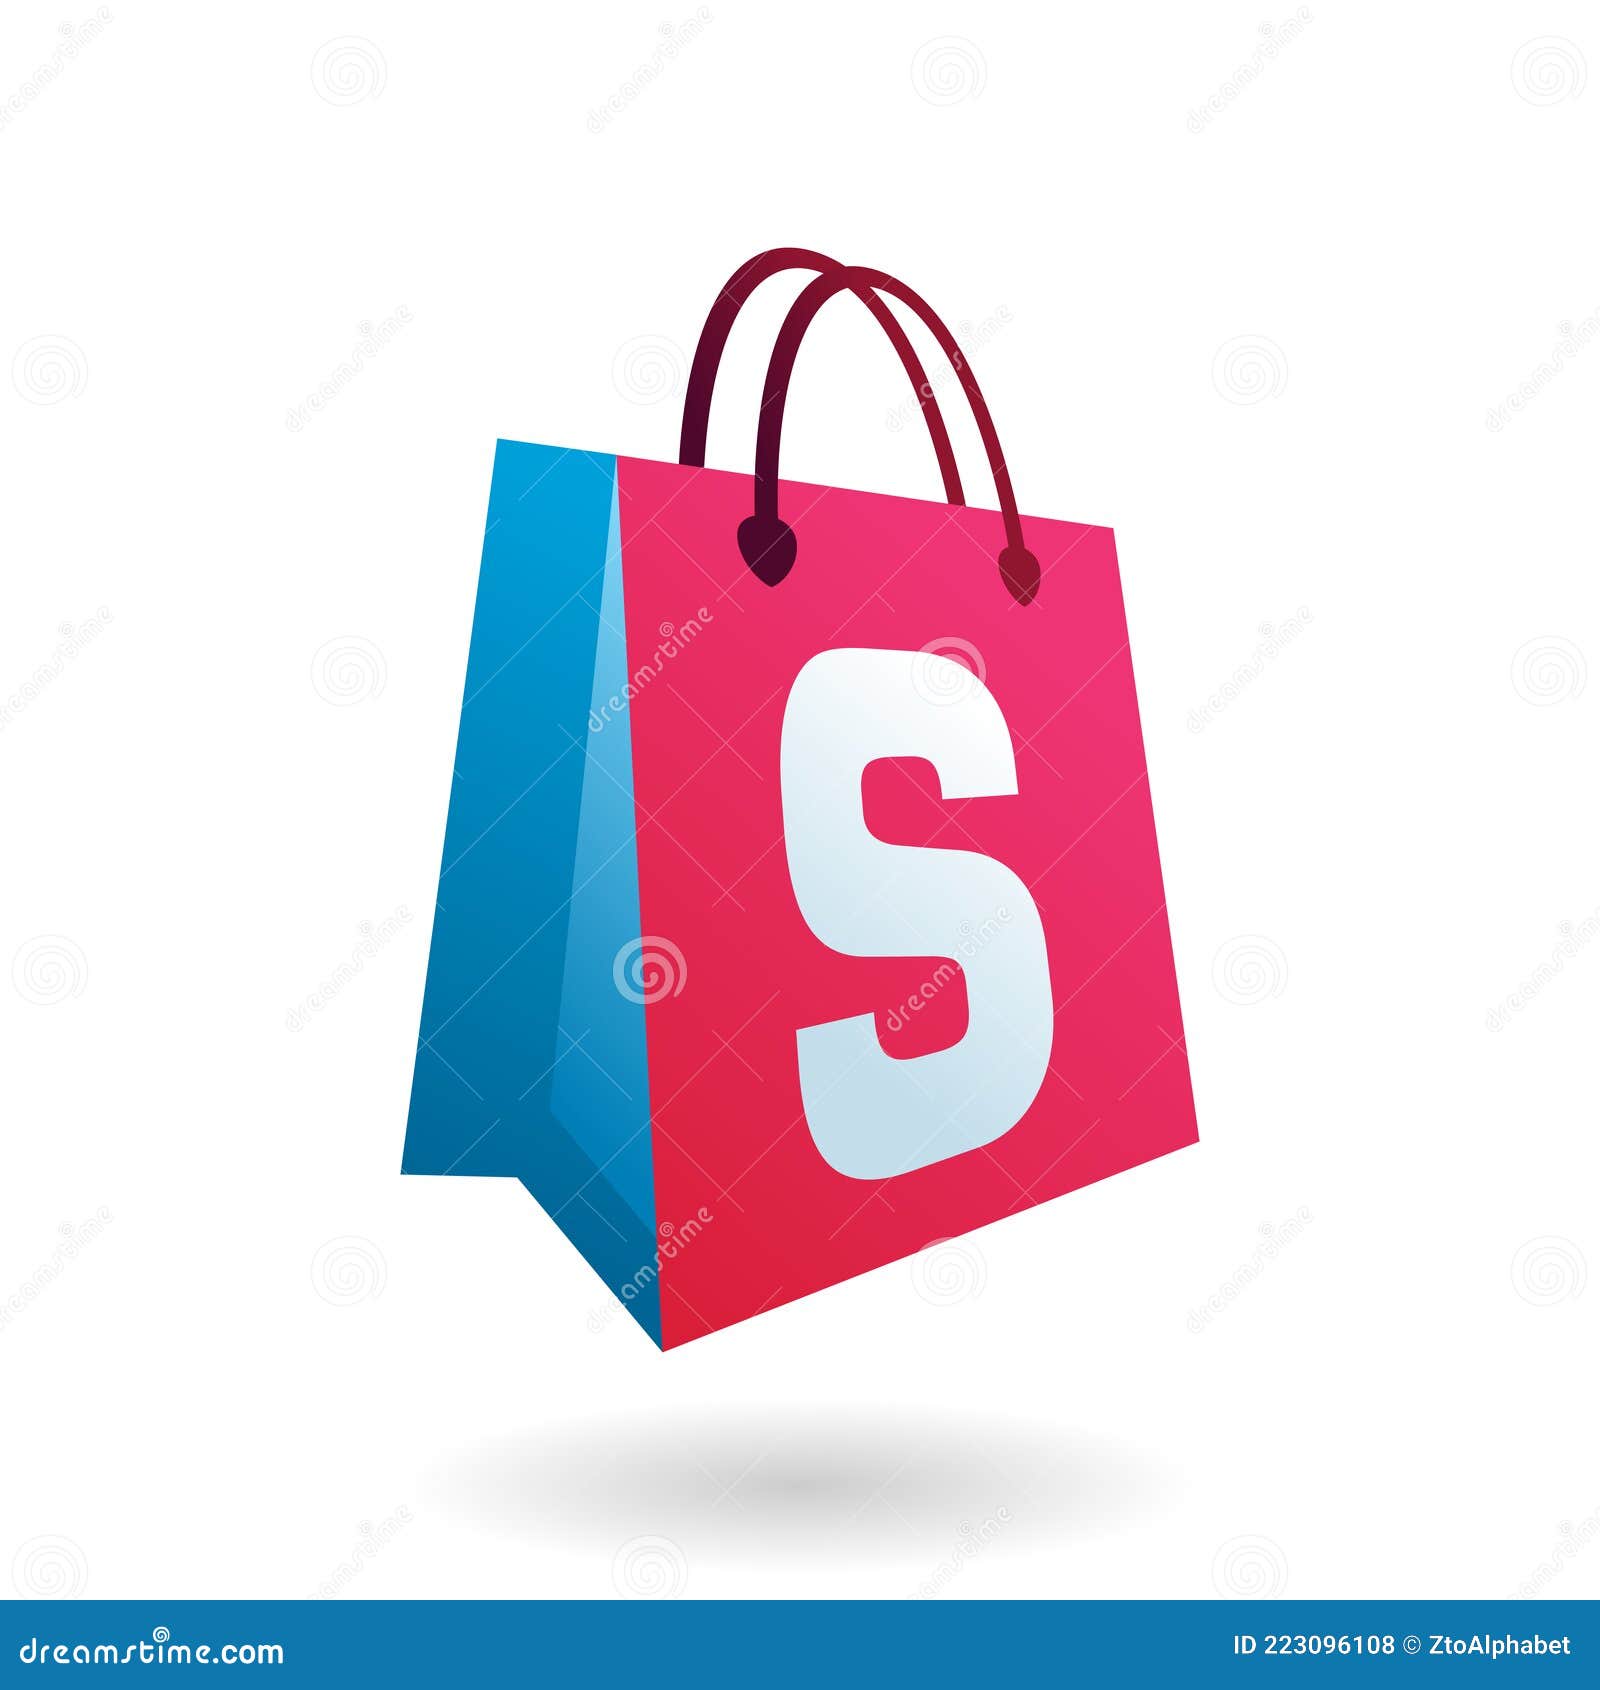 Shopping Bag Letter S Logo stock vector. Illustration of ecommerce ...